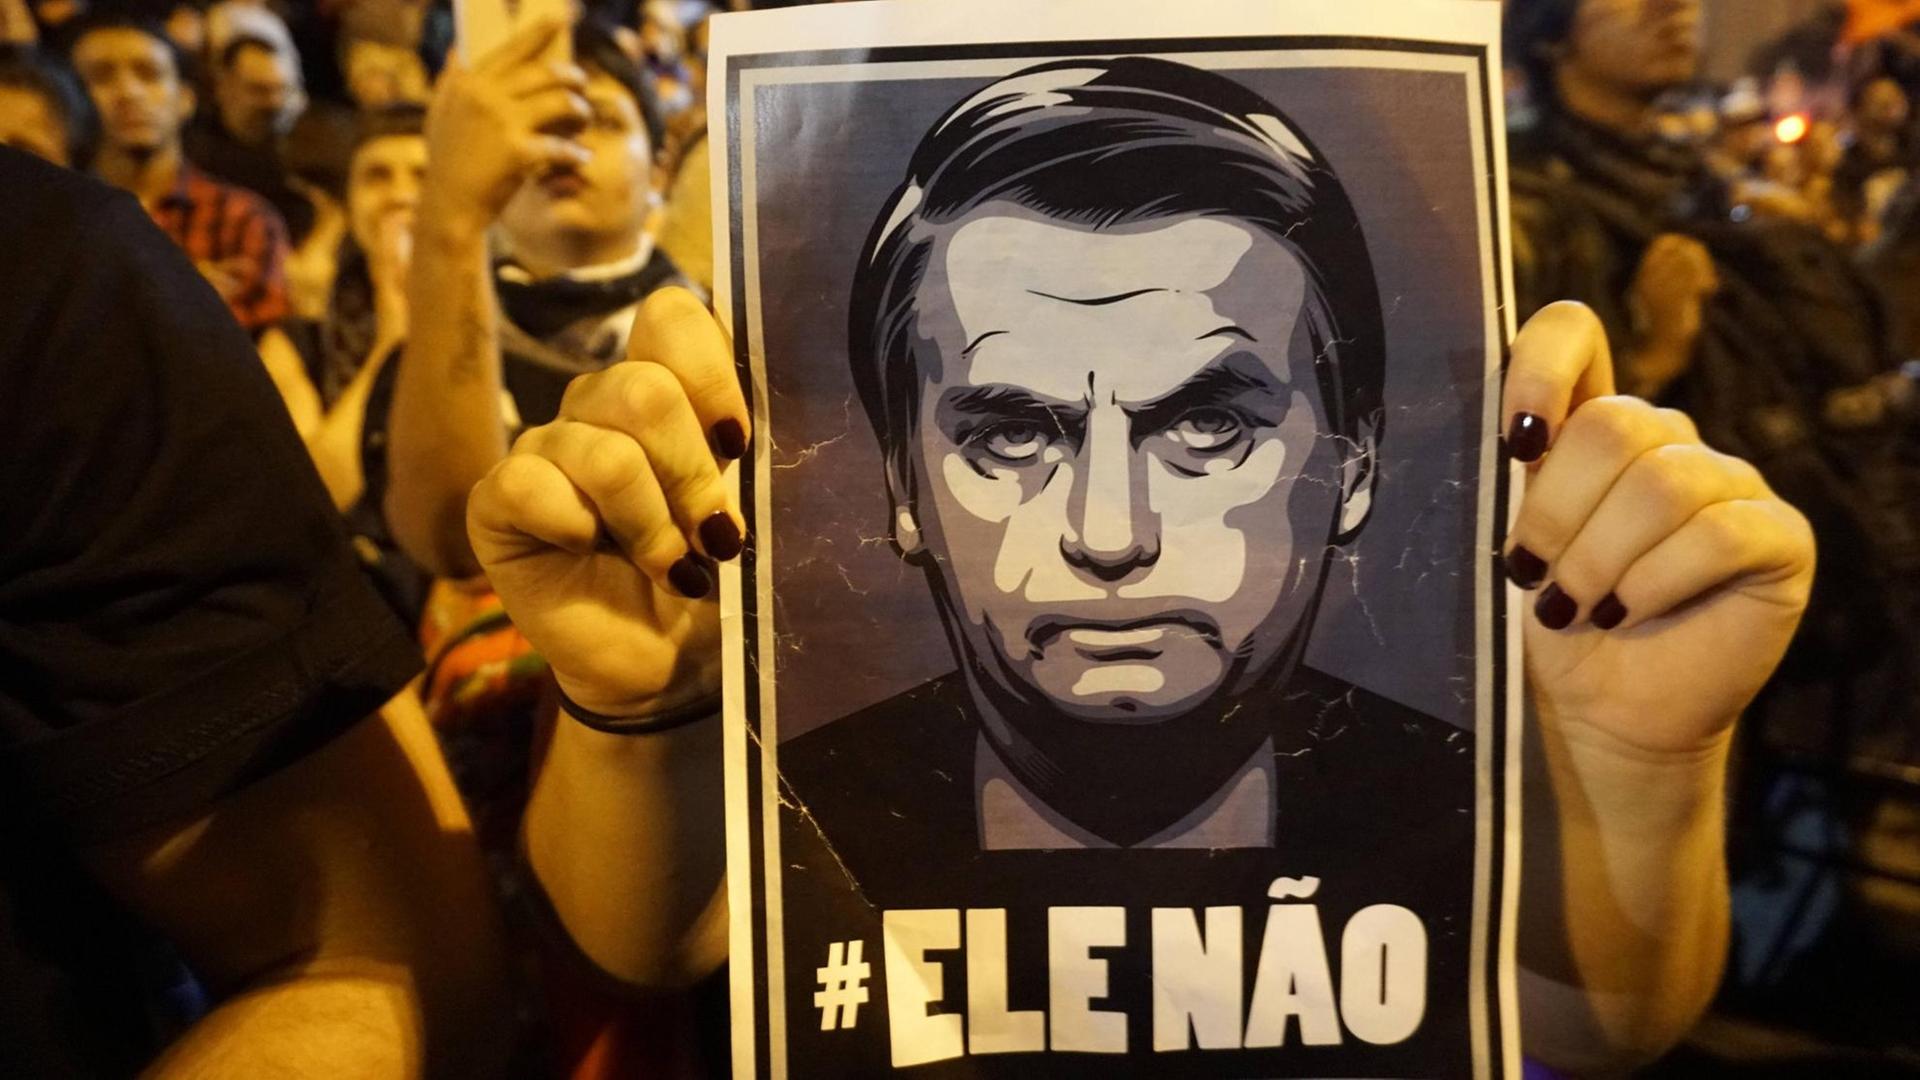 Studenten demonstrieren am 30. Oktober 2018 gegen Bolsonaro, der zum neuen Präsidenten Brasiliens gewählt wurde. Sie halten ein Plakat in die Höhe auf dem steht #EleNao (dt. "Er nicht").